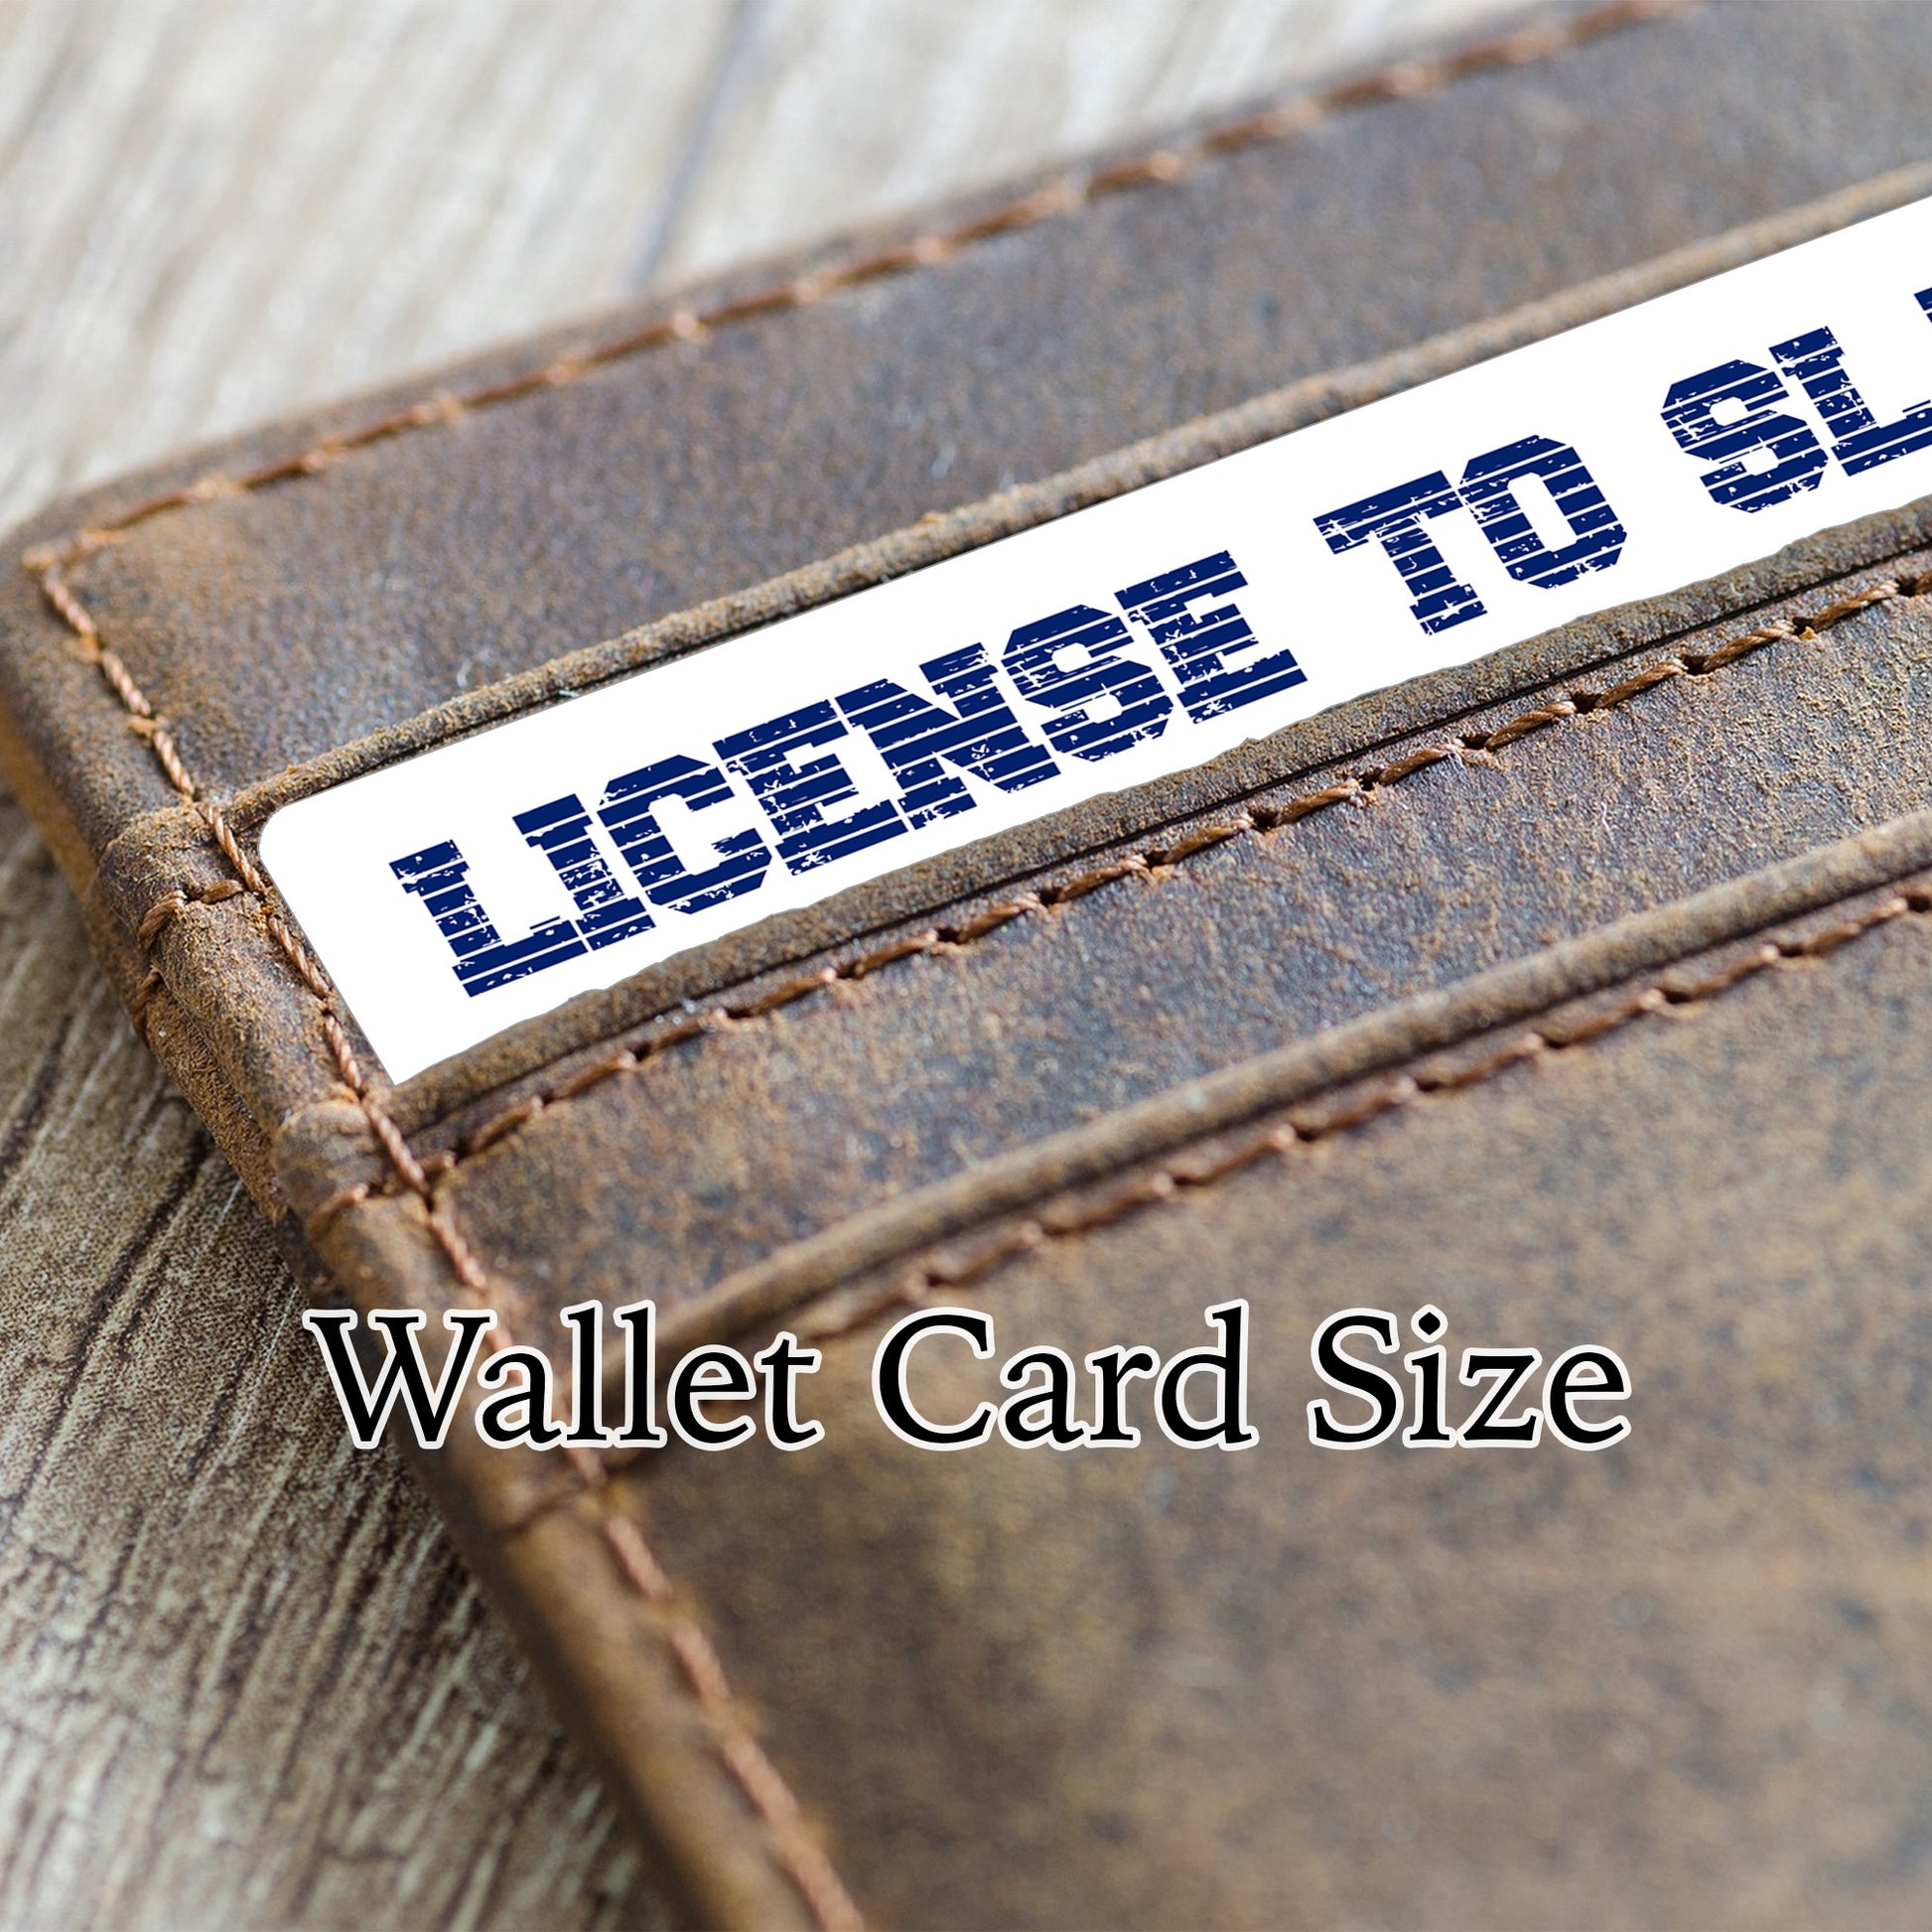 Genderfaun pride personalised license to slay card